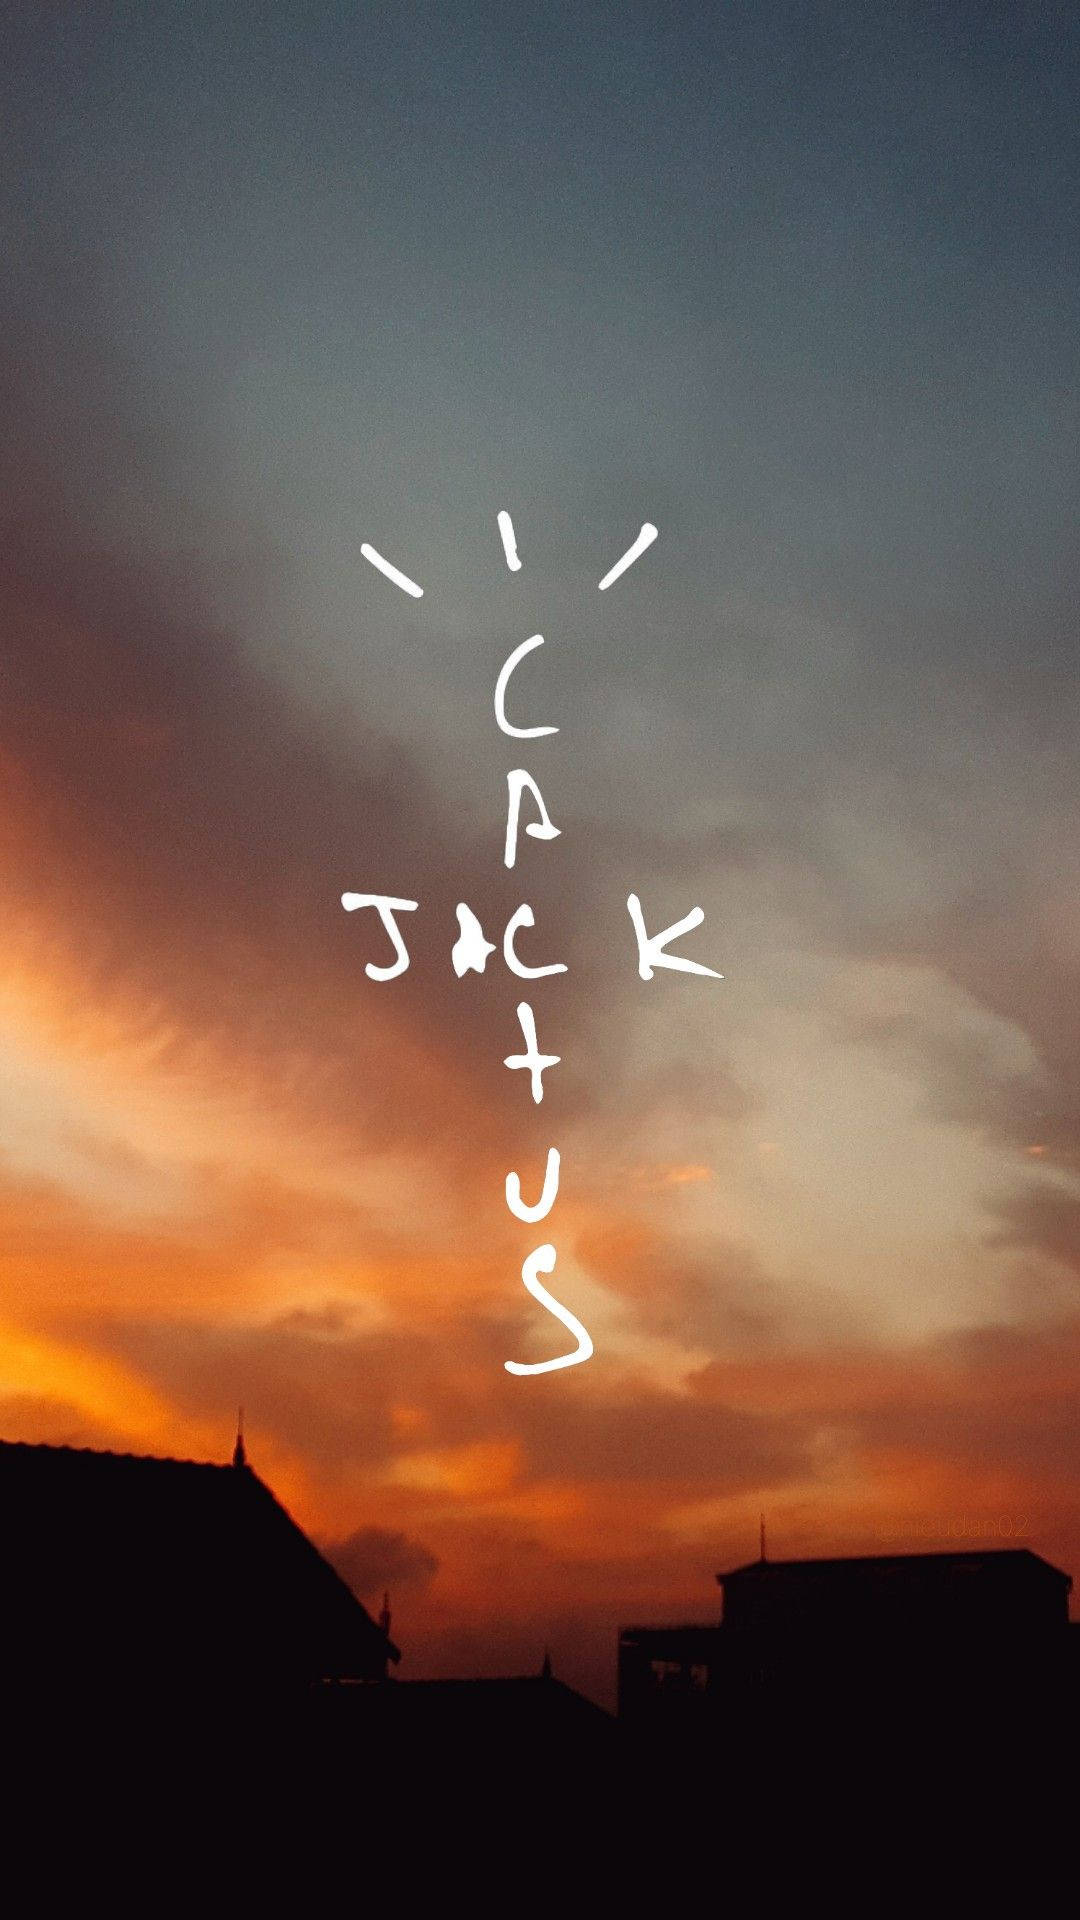 Cactus Jack And Sunset Background